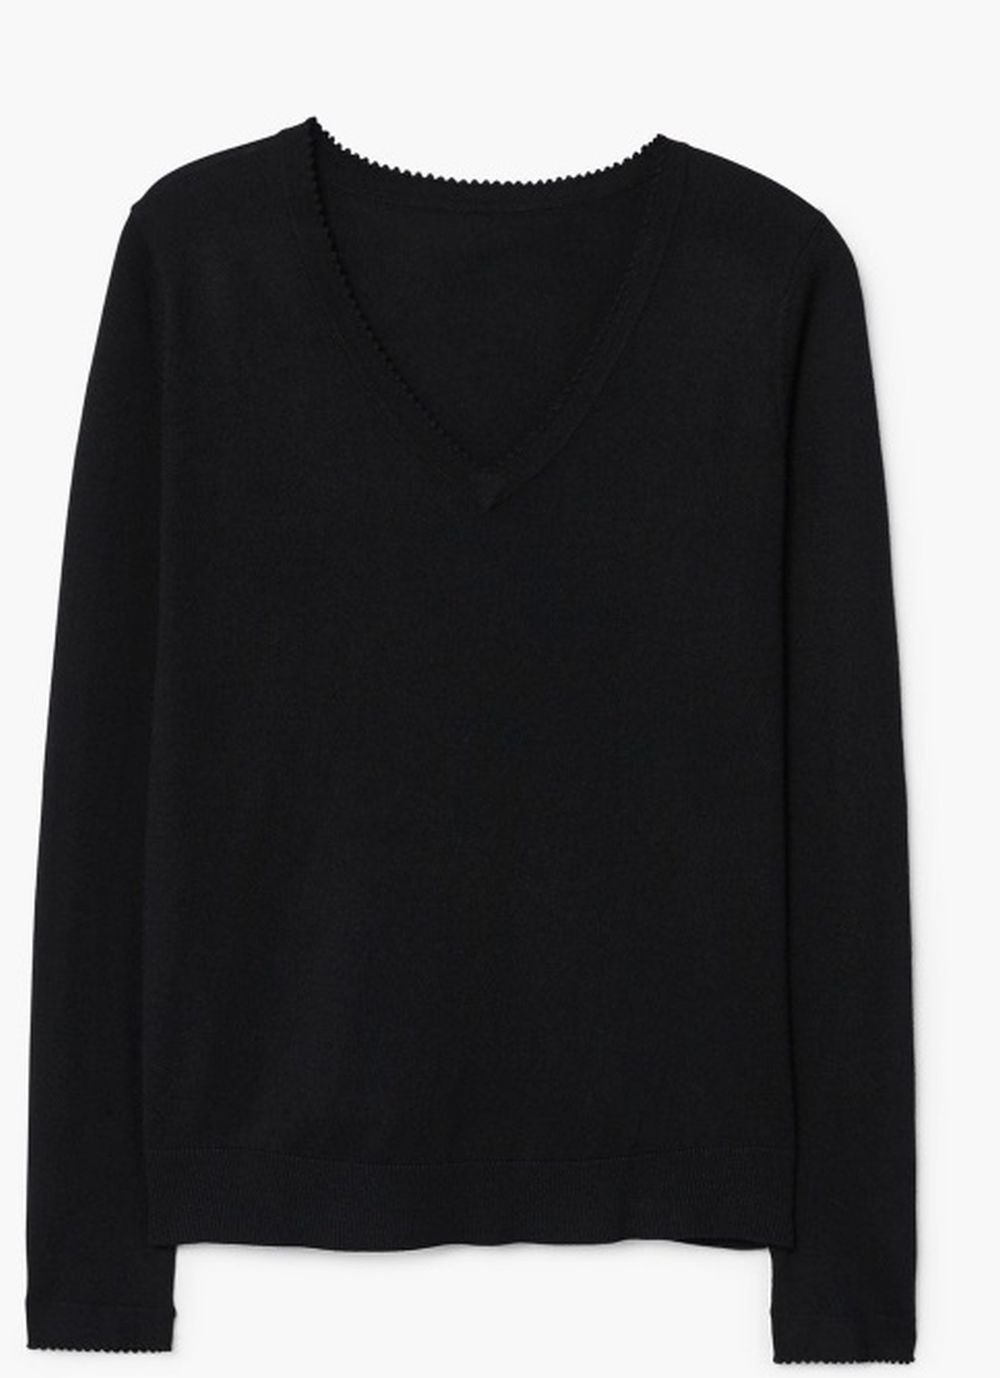 Jersey negro de MANGO (17,99 euros)